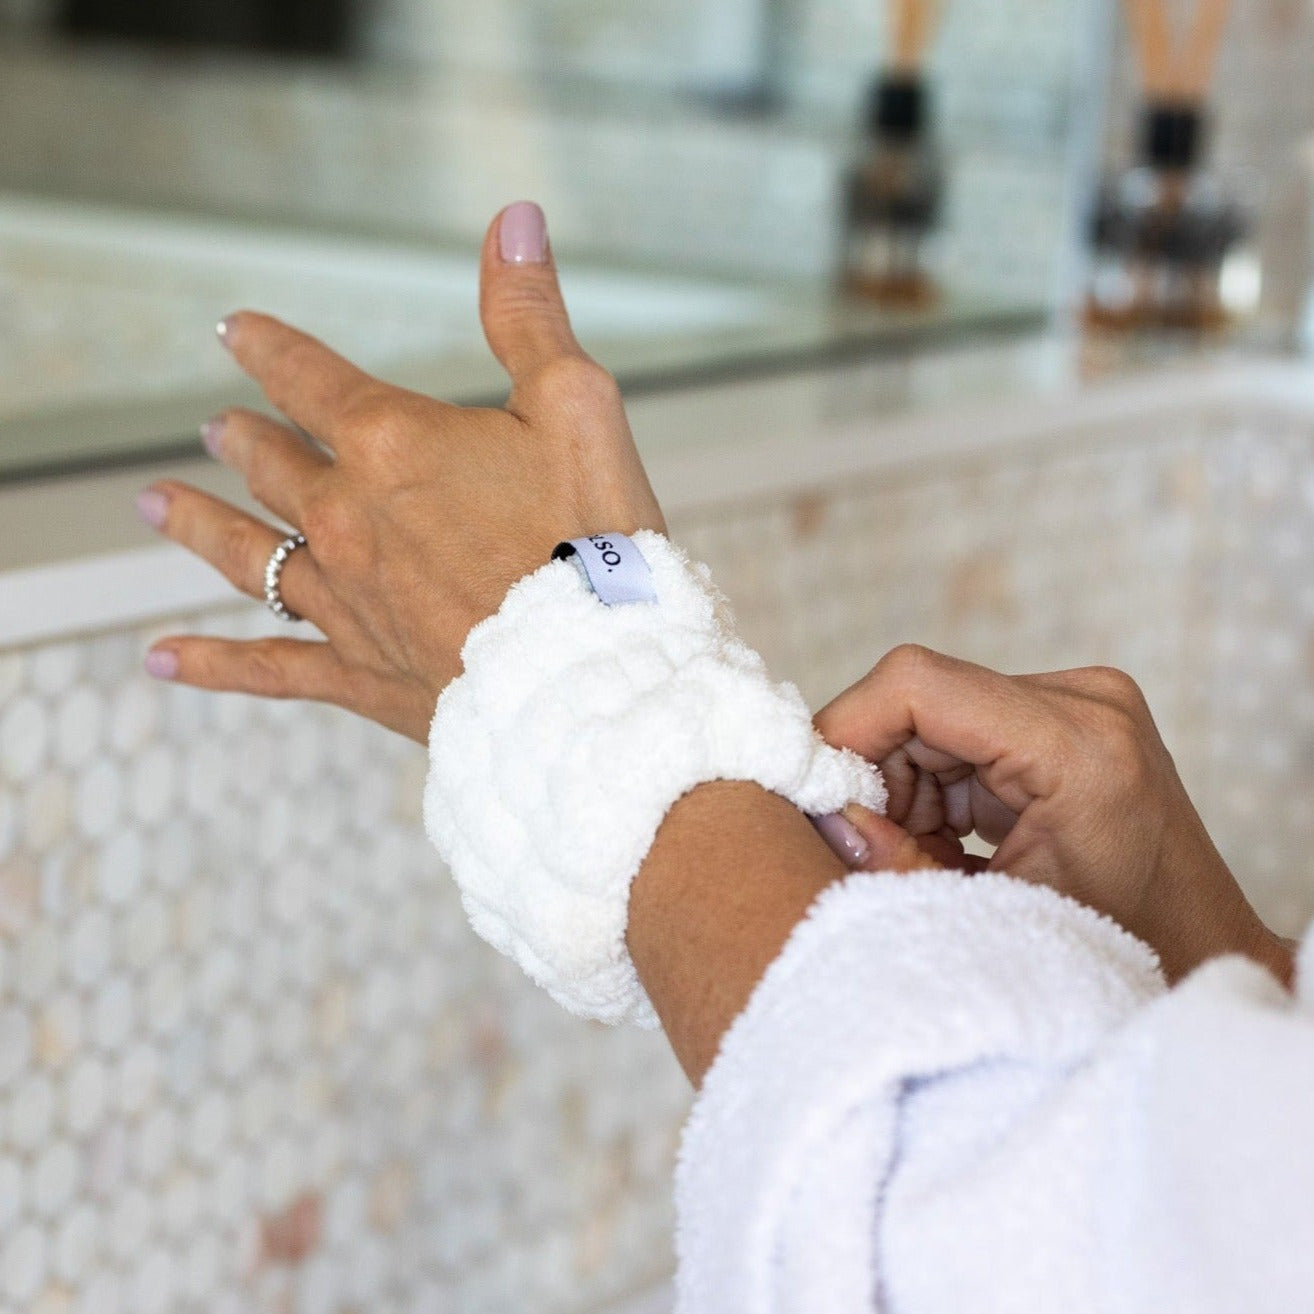 Spa White Wash Cuffs on wrists washing face